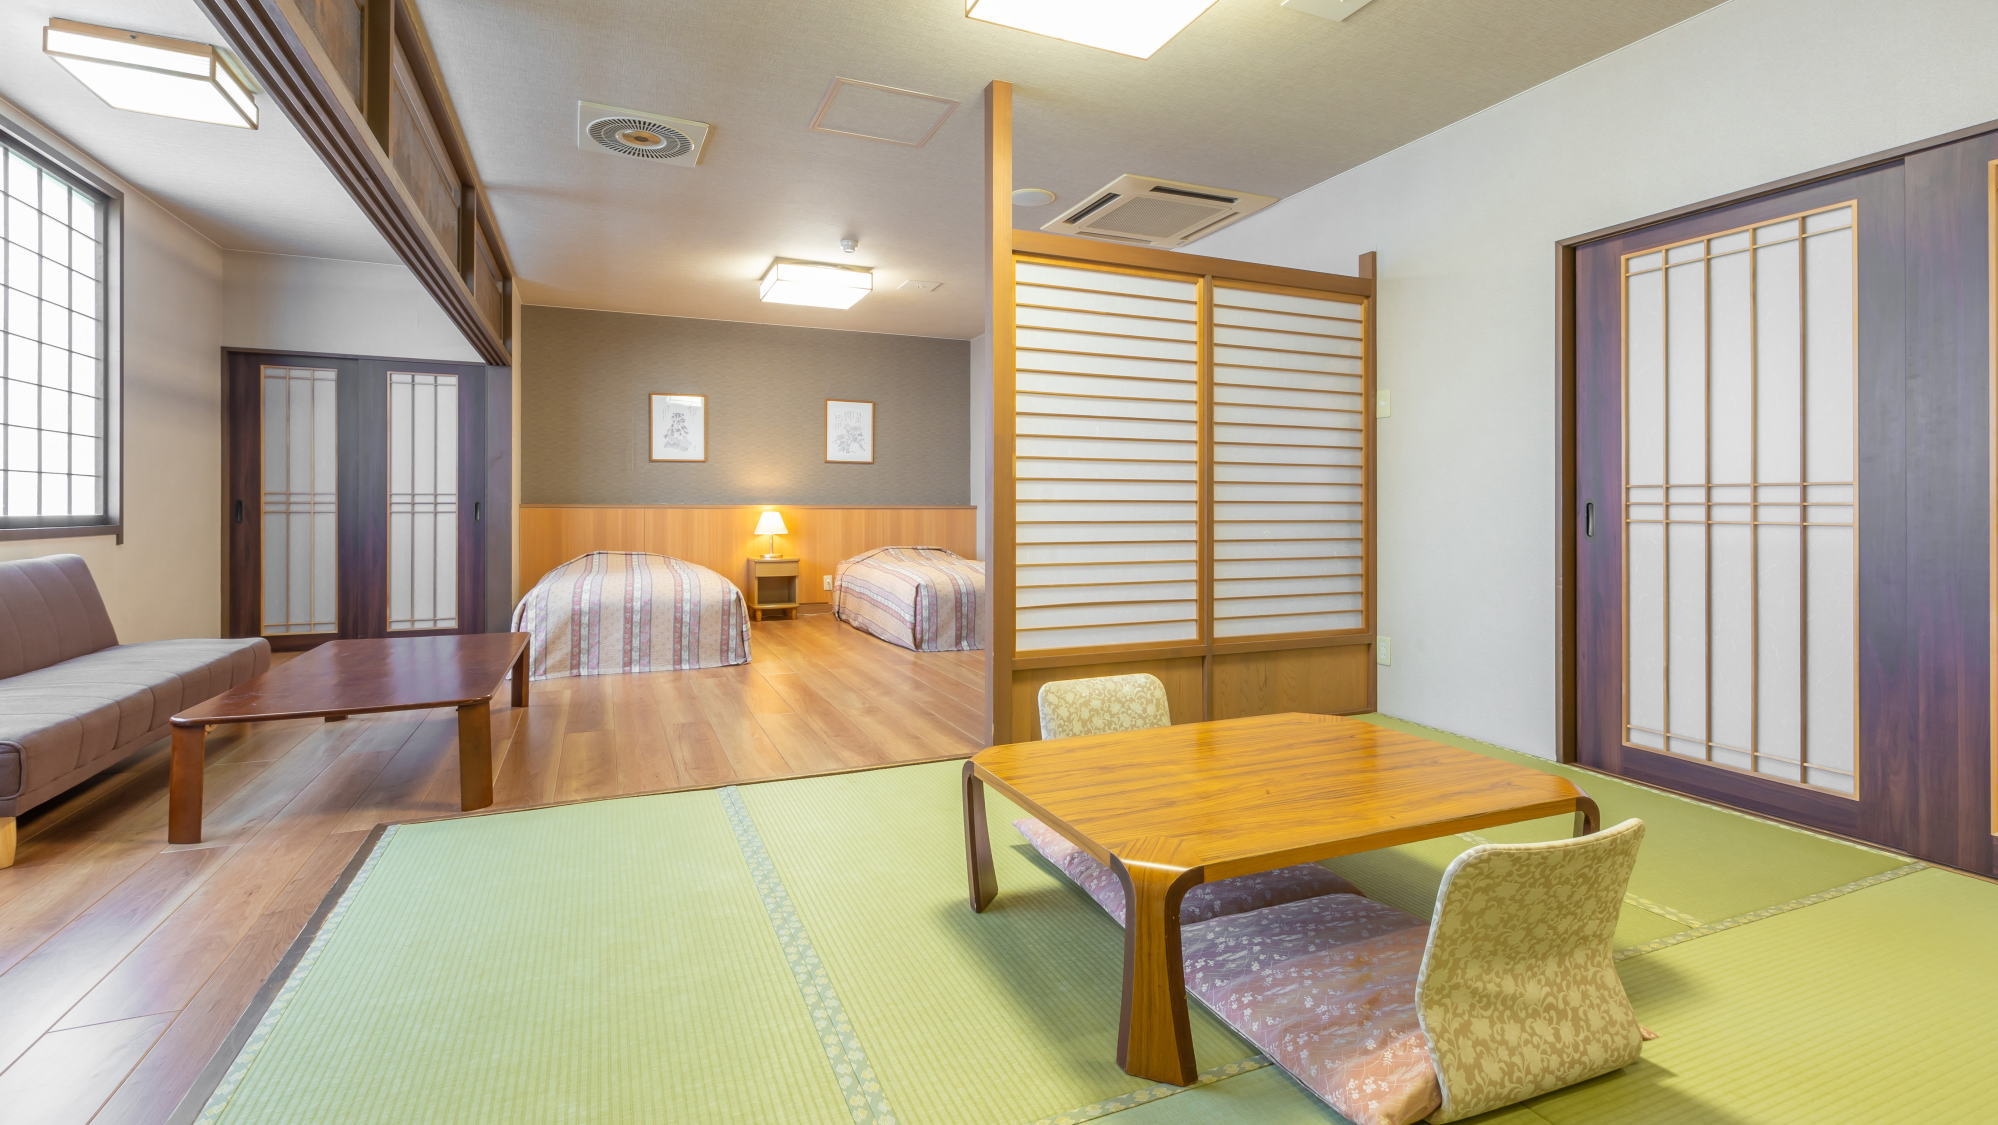 【동관 화양실】트윈 침대가 있는 플로어링과 일본식 객실 8 다다미를 조합한 객실입니다.